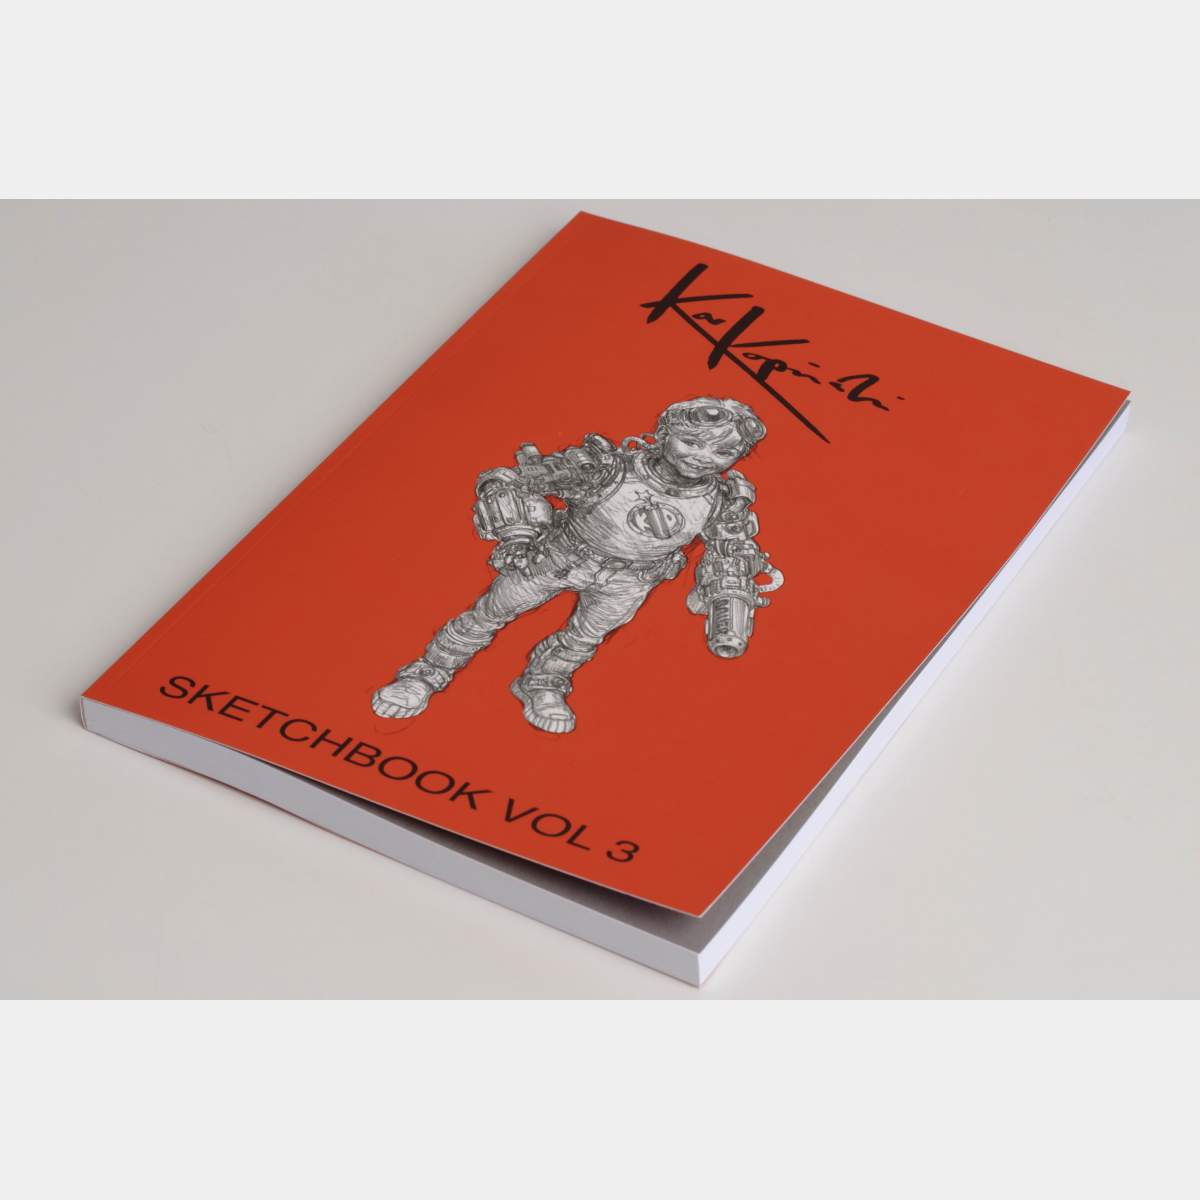 Karl Kopinski Sketchbook Vol 3